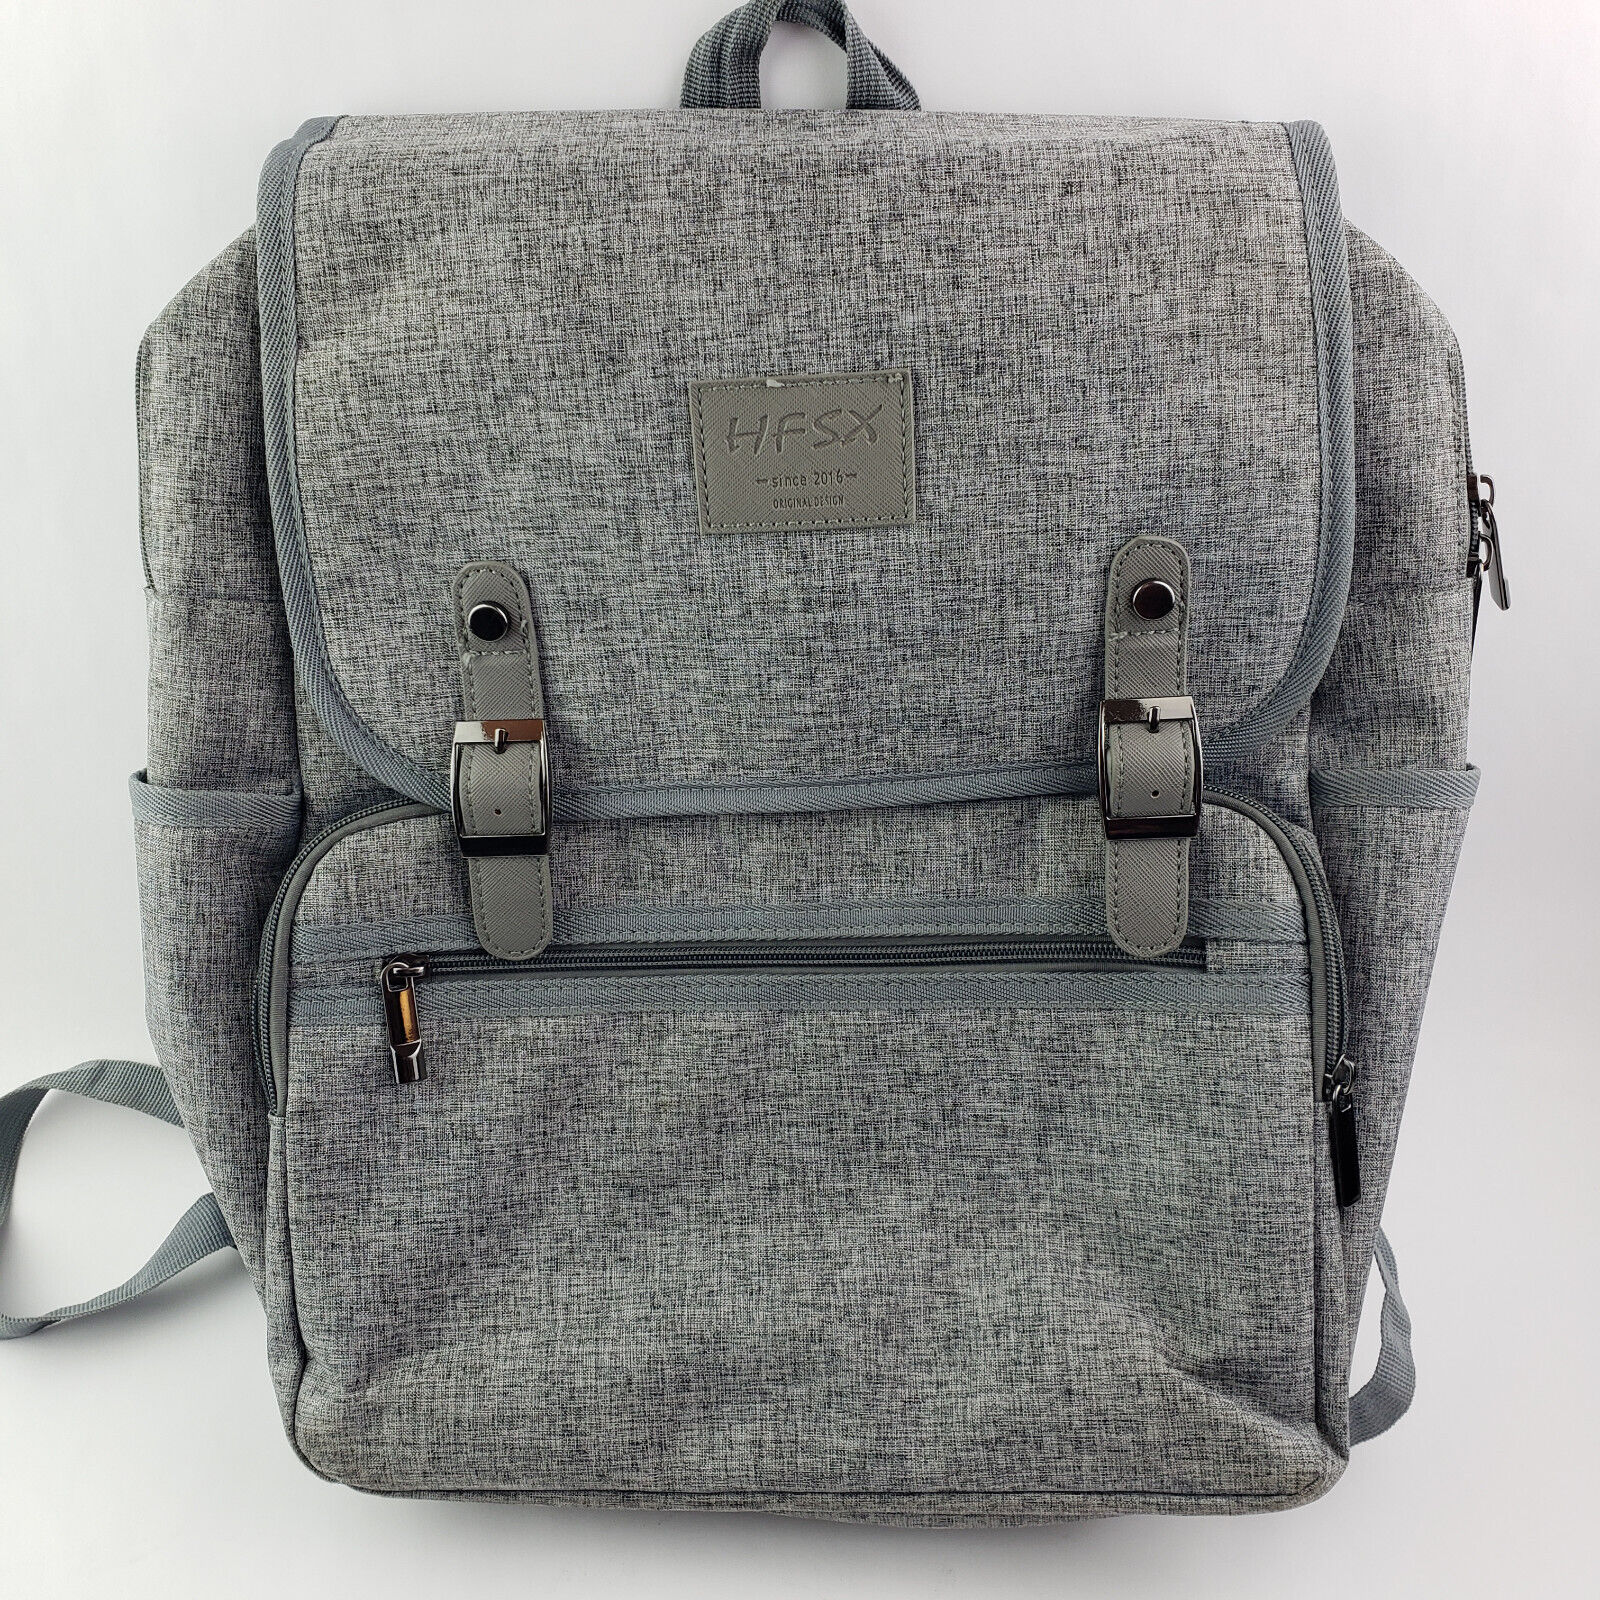 HFSX Backpack Bookbag Laptop Bag for Women Men Vintage Grey Back Pack EUC